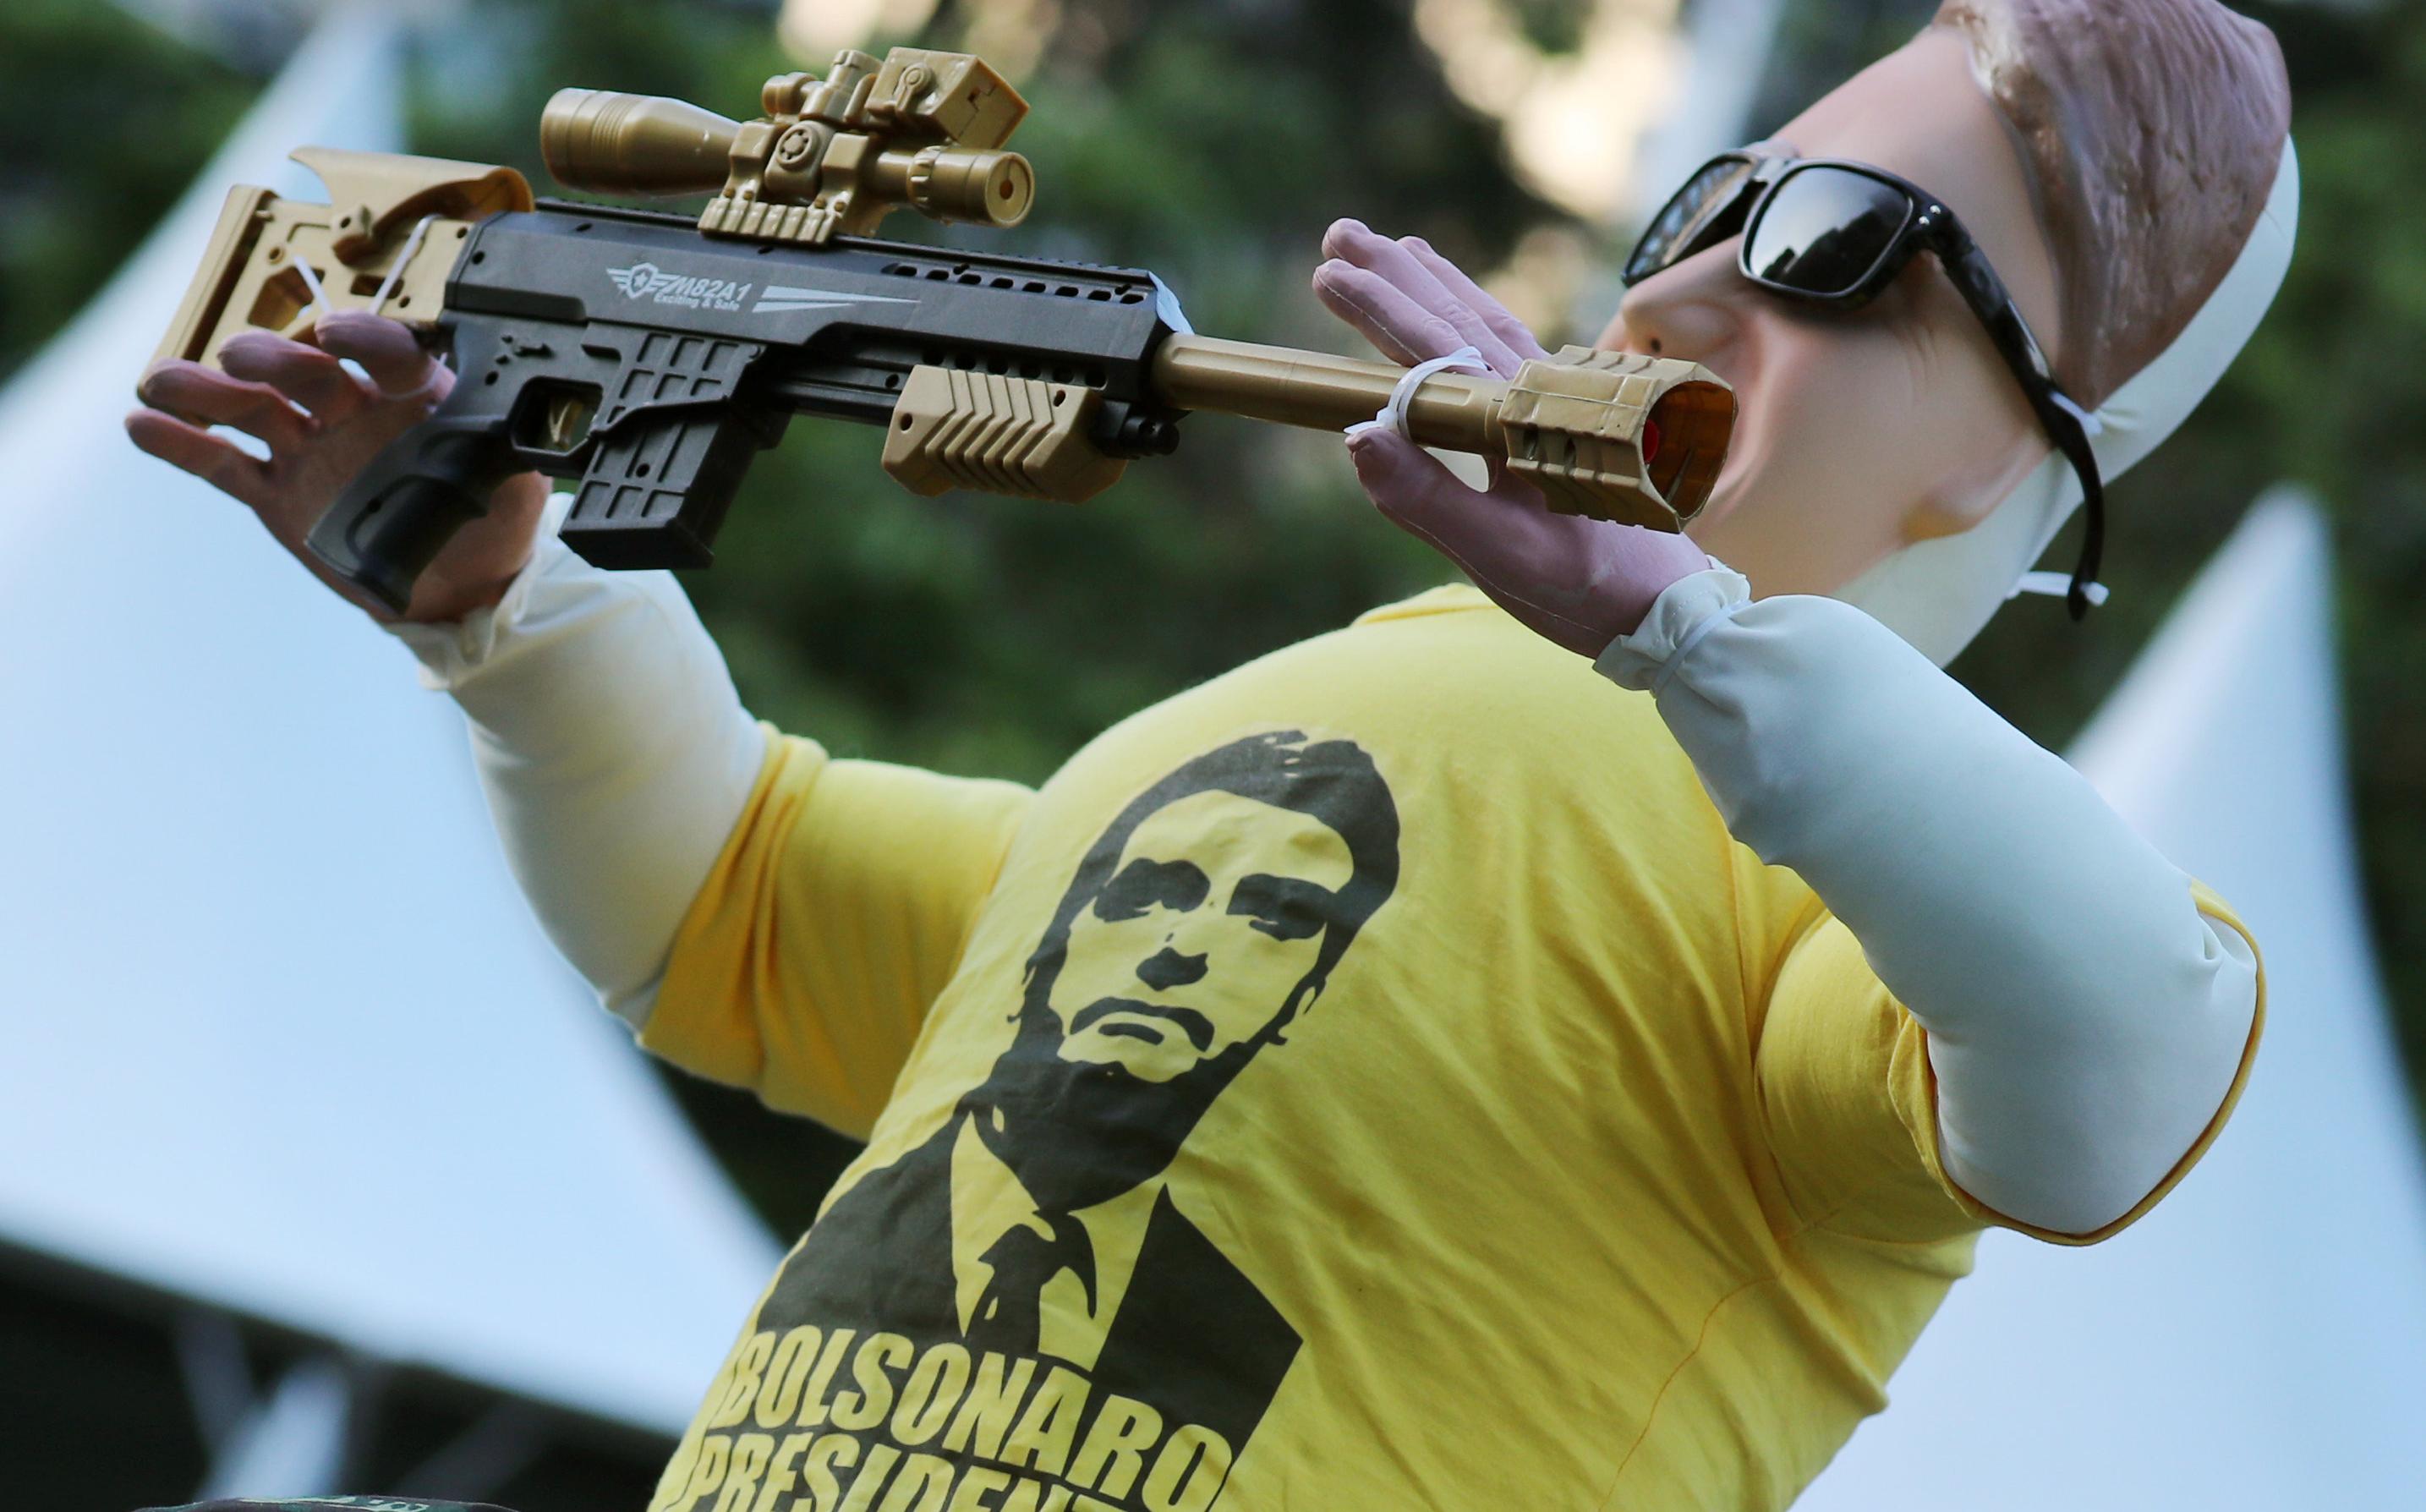 Pese a los altos índices de mortalidad por arma de fuego en Brasil, el presidente electo Jair Bolsonaro pretende facilitar el porte para todos los ciudadanos sin antecedentes penales.